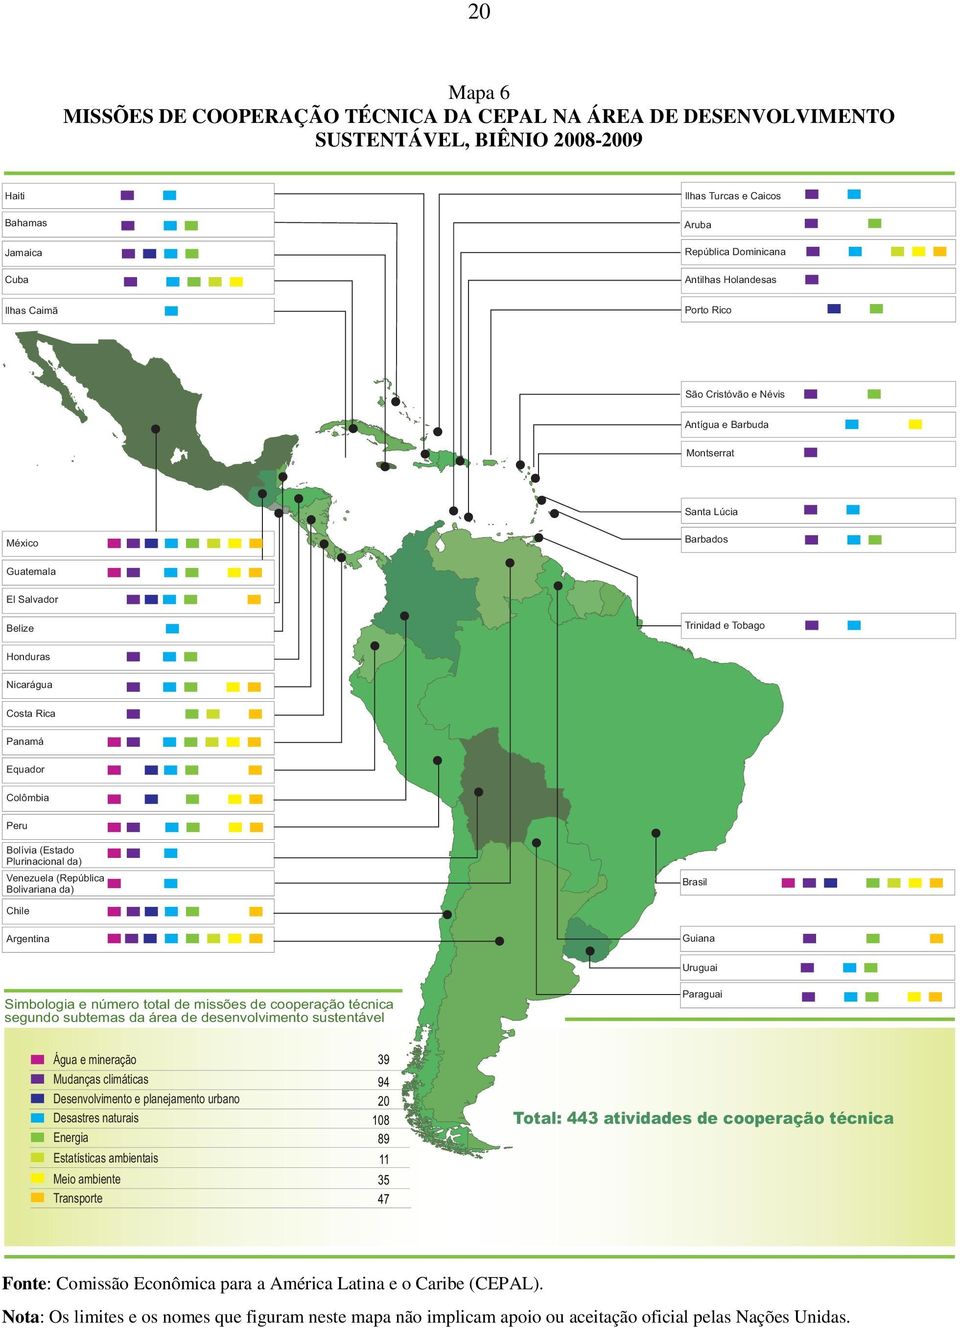 Equador Colômbia Peru Bolívia (Estado Plurinacional da) Venezuela (República Bolivariana da) Brasil Chile Guiana Argentina Uruguai Paraguai Simbologia e número total de missões de cooperação técnica